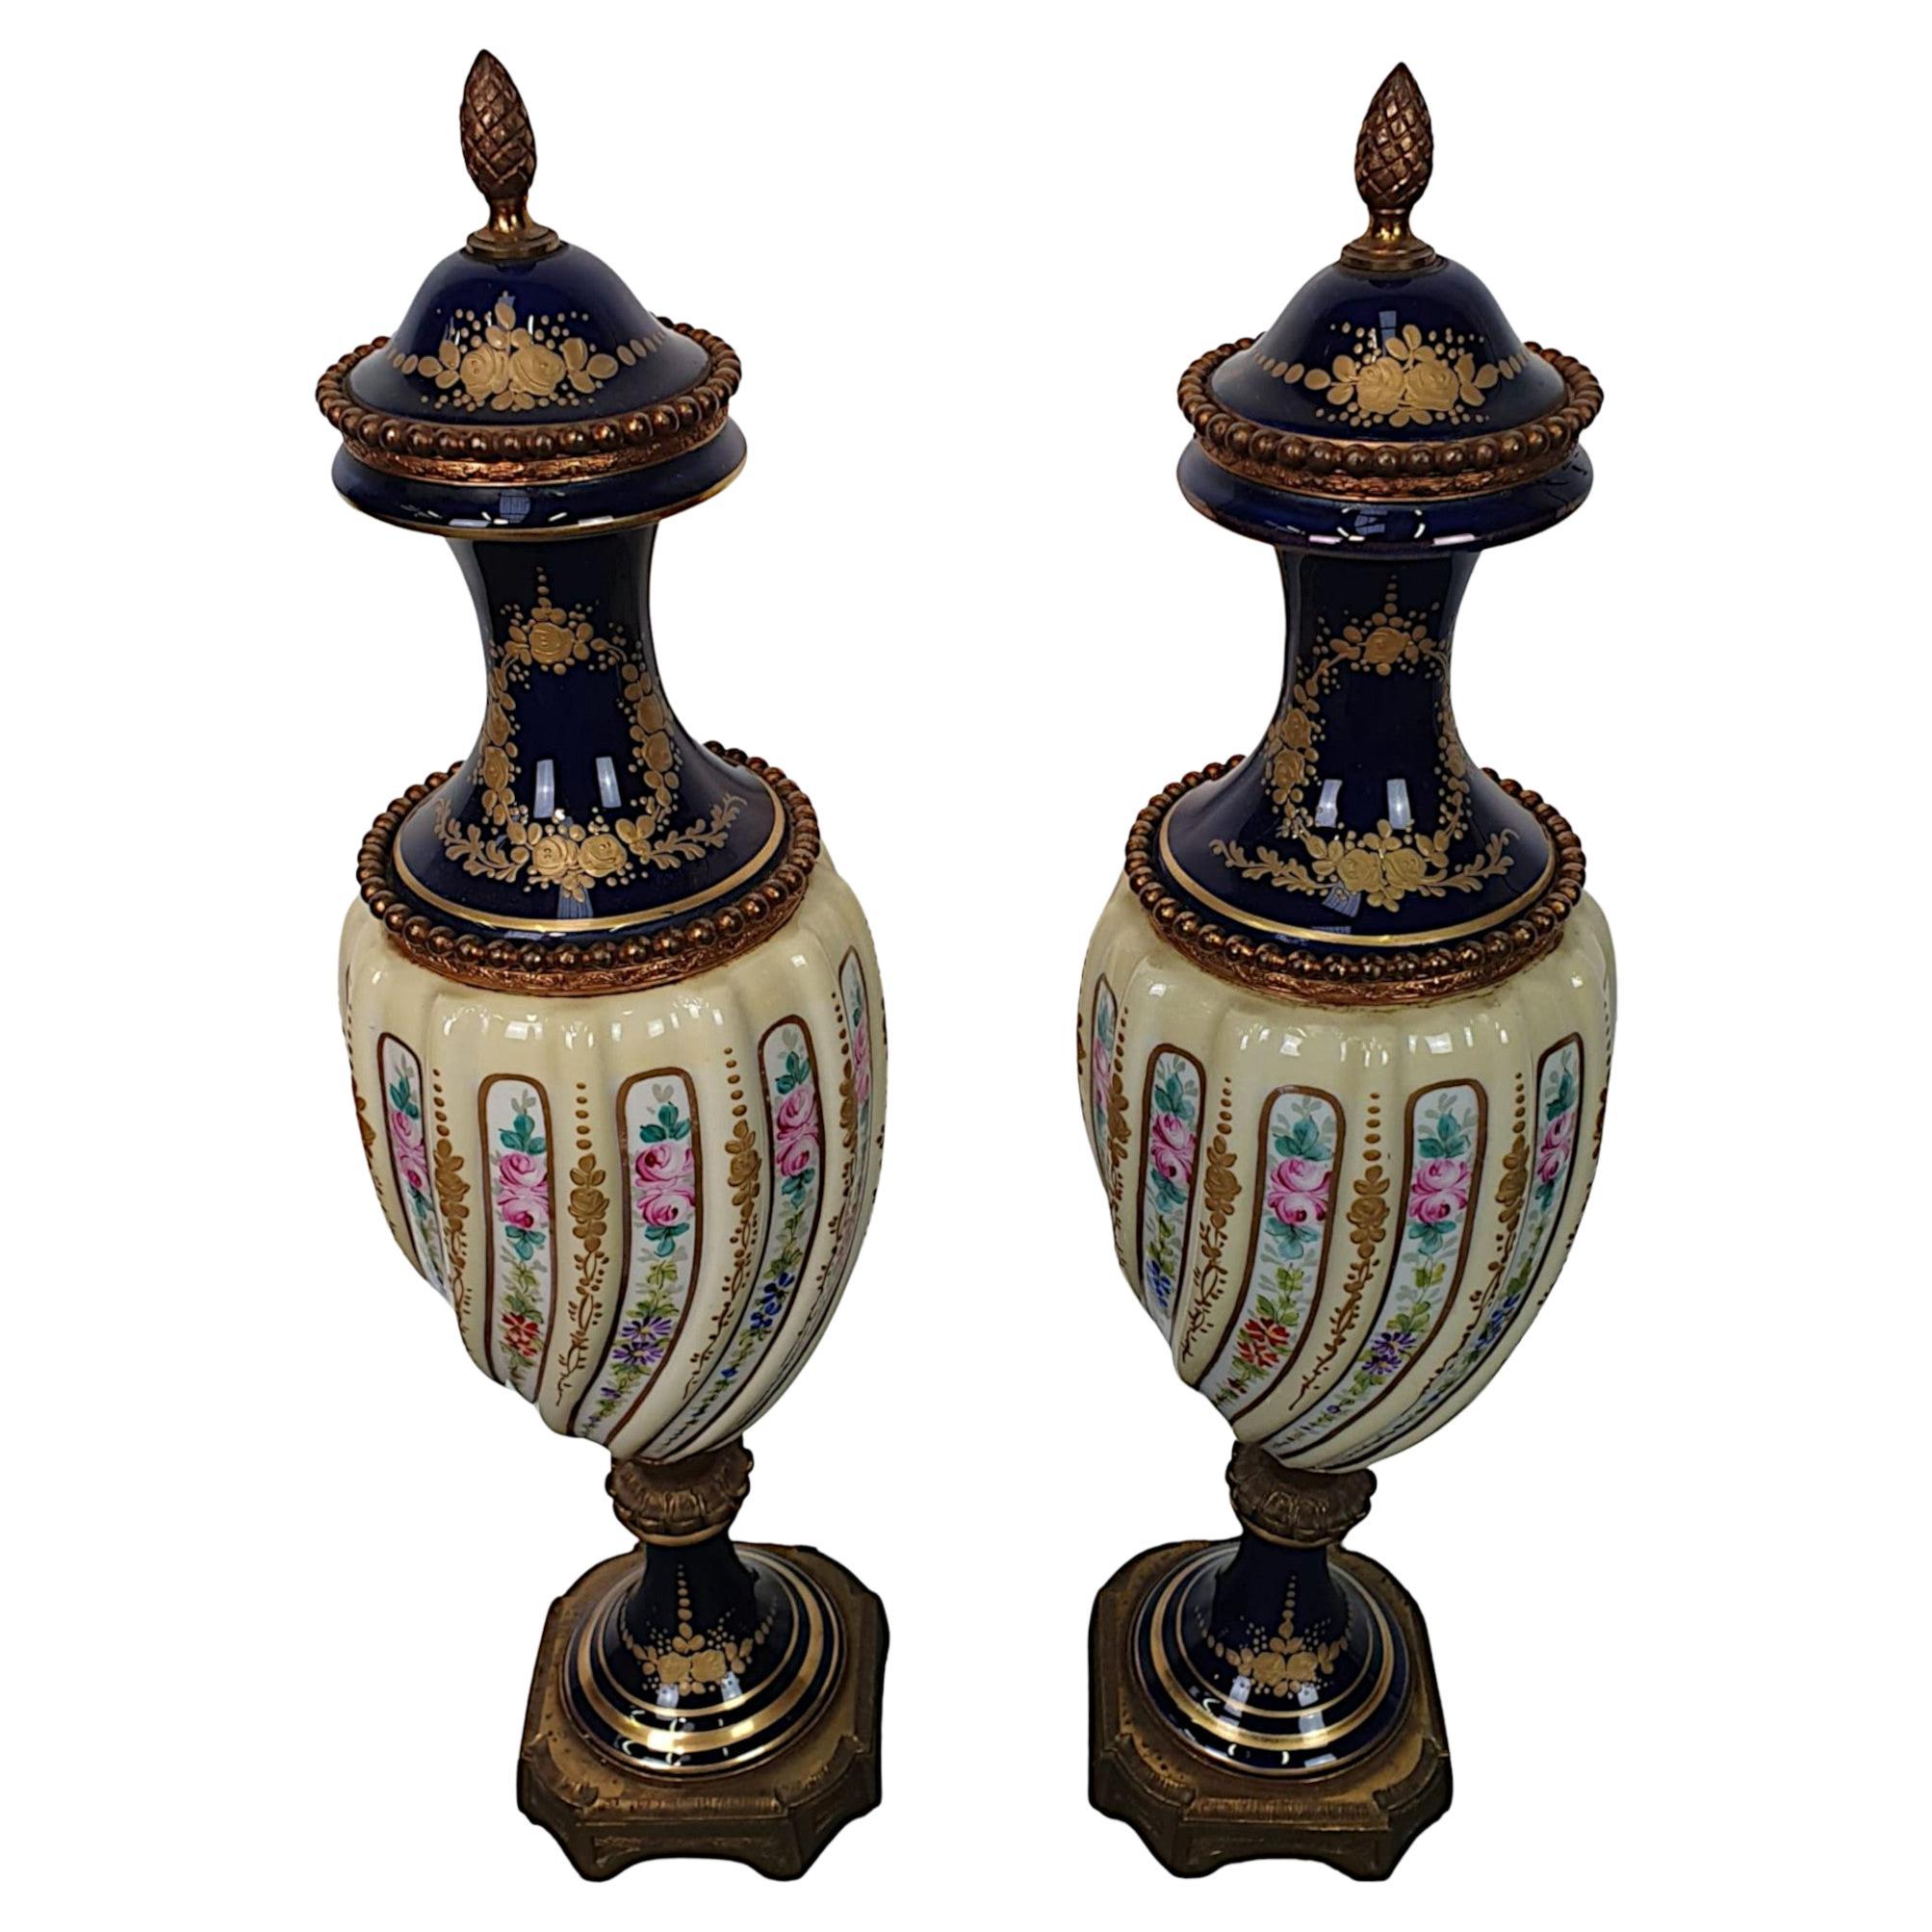 Paire d'urnes du 19ème siècle à la manière de Sèvres, de très belle qualité